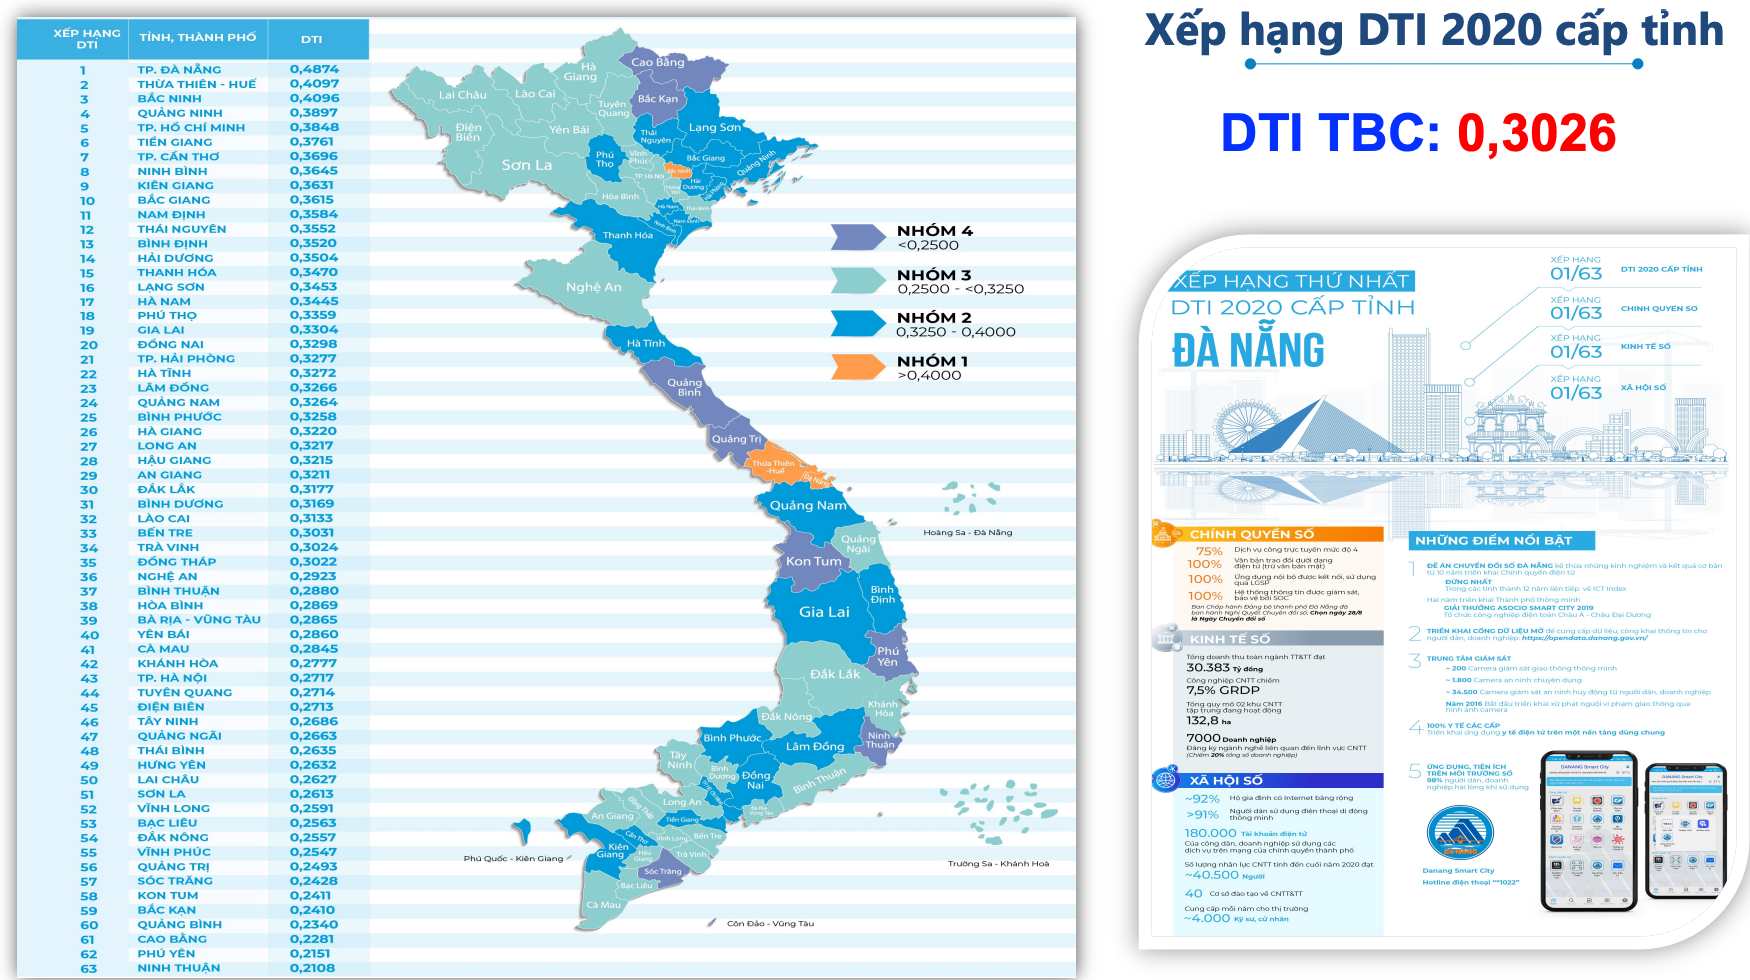 Bộ Tài chính, Đà Nẵng đứng đầu mức độ CĐS năm 2020 - Ảnh 4.